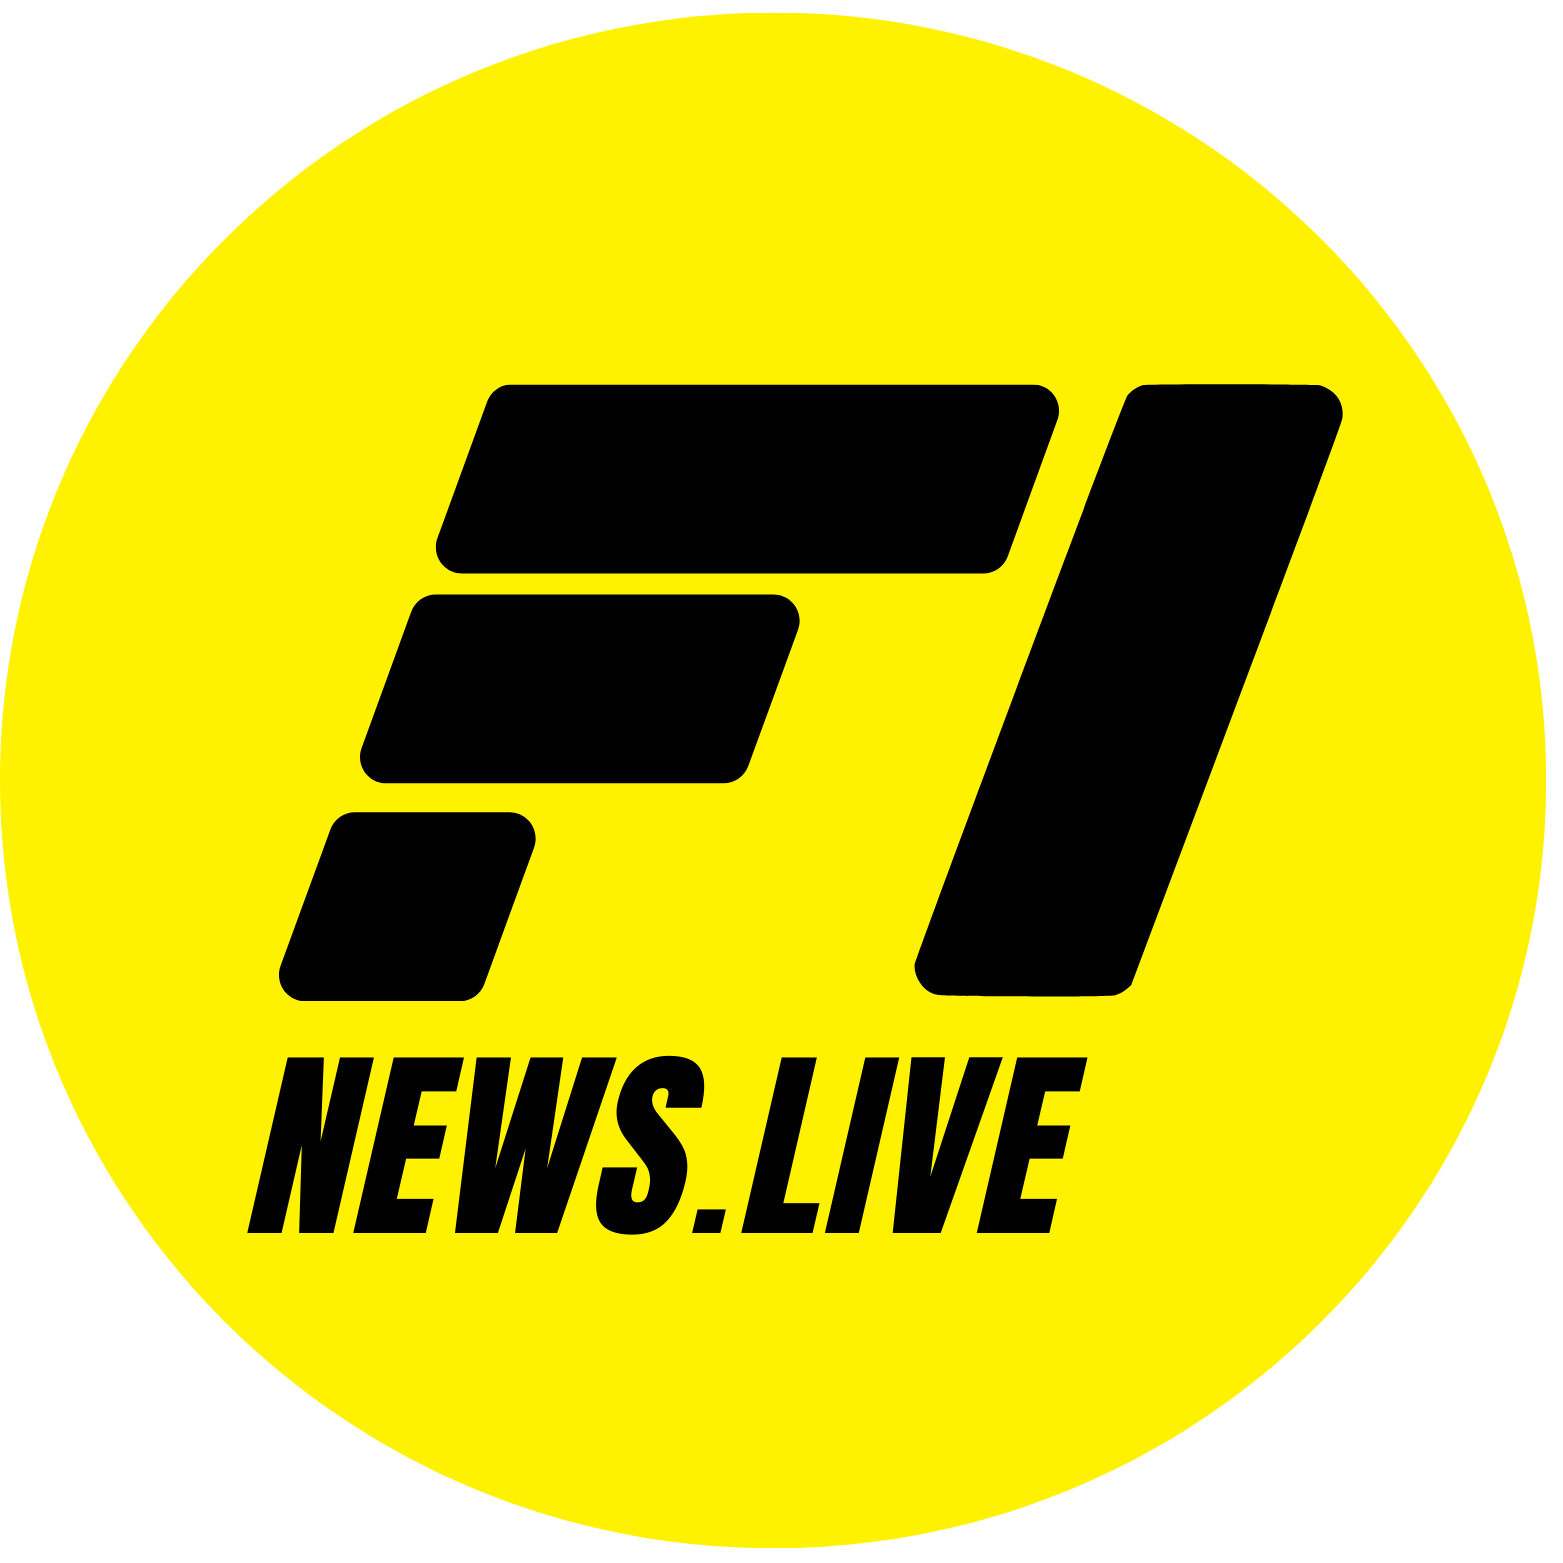 F1news.live Staff